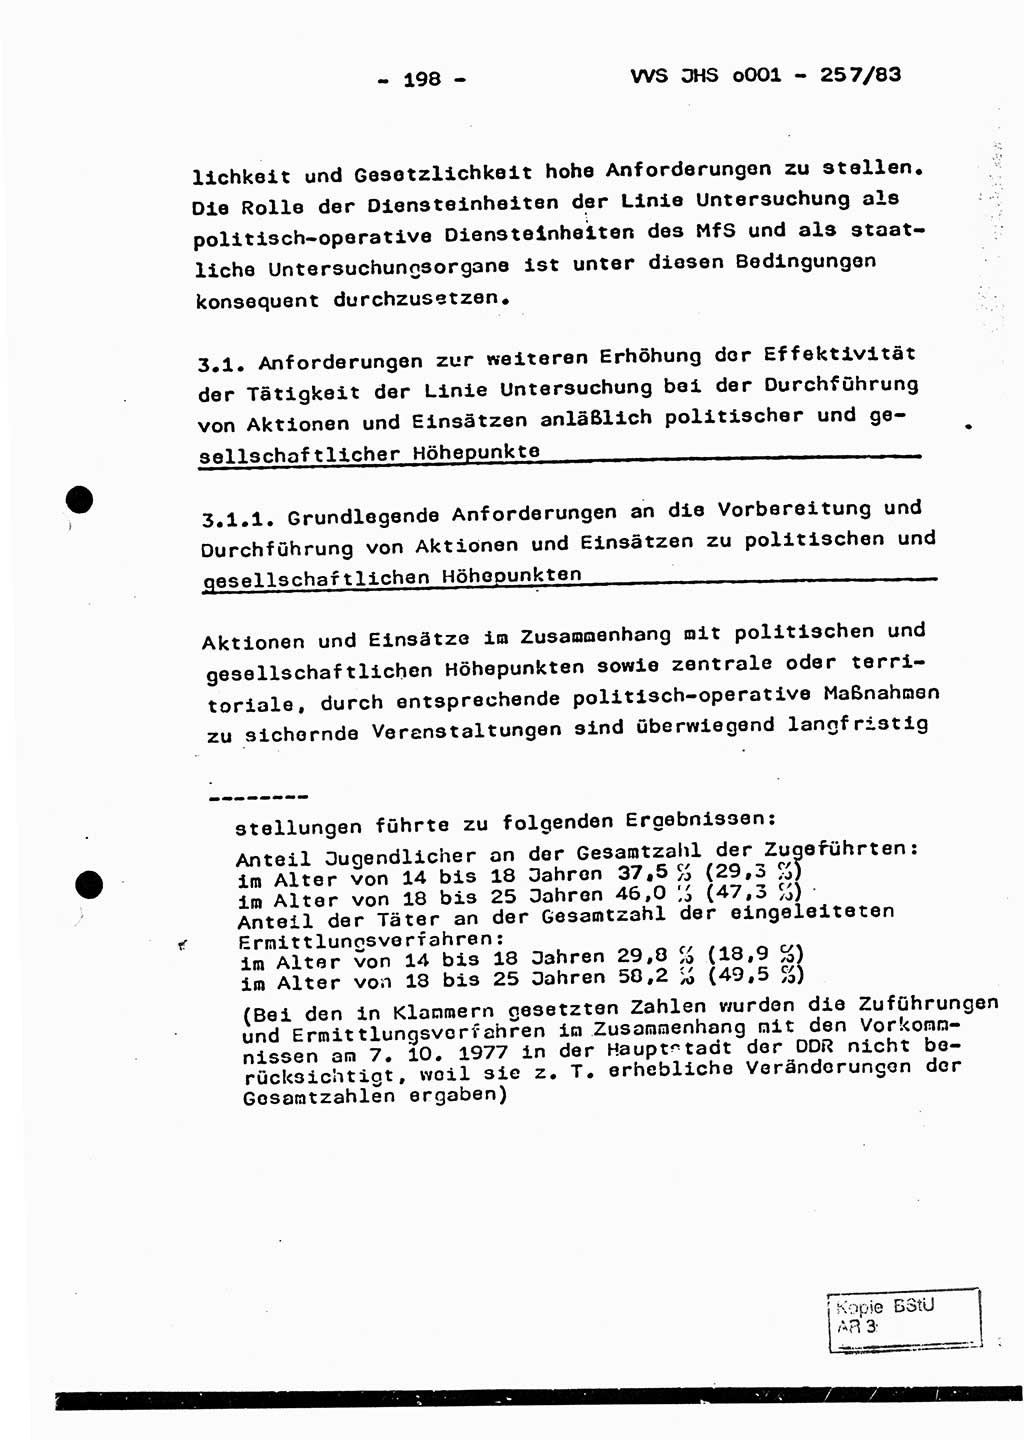 Dissertation, Oberst Helmut Lubas (BV Mdg.), Oberstleutnant Manfred Eschberger (HA IX), Oberleutnant Hans-Jürgen Ludwig (JHS), Ministerium für Staatssicherheit (MfS) [Deutsche Demokratische Republik (DDR)], Juristische Hochschule (JHS), Vertrauliche Verschlußsache (VVS) o001-257/83, Potsdam 1983, Seite 198 (Diss. MfS DDR JHS VVS o001-257/83 1983, S. 198)